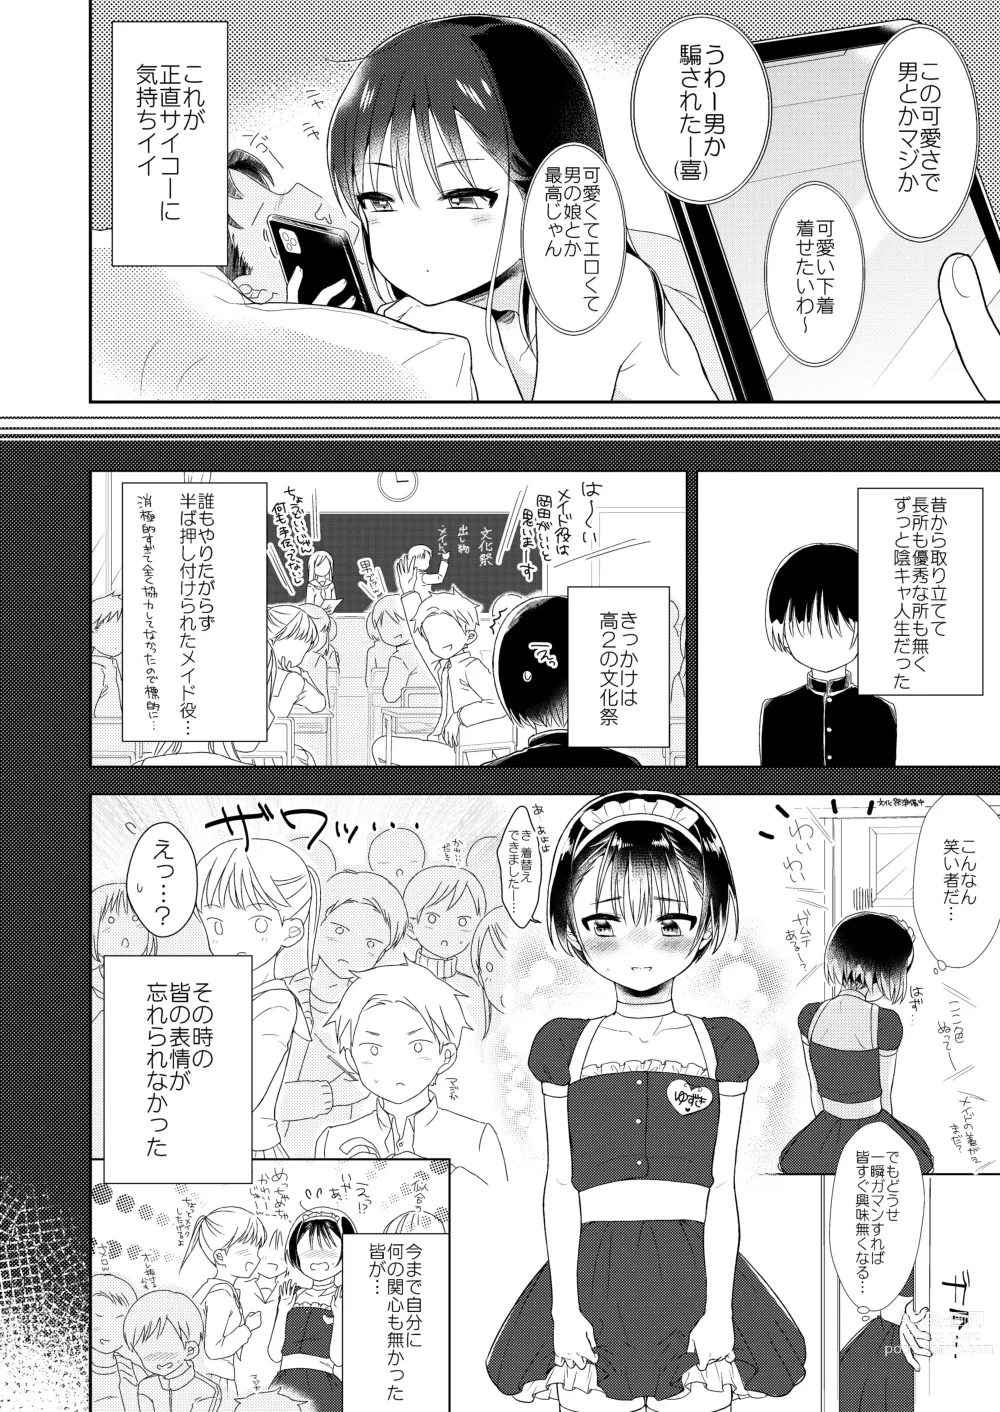 Page 5 of doujinshi Otokonoko x Otokonoko = Saikou